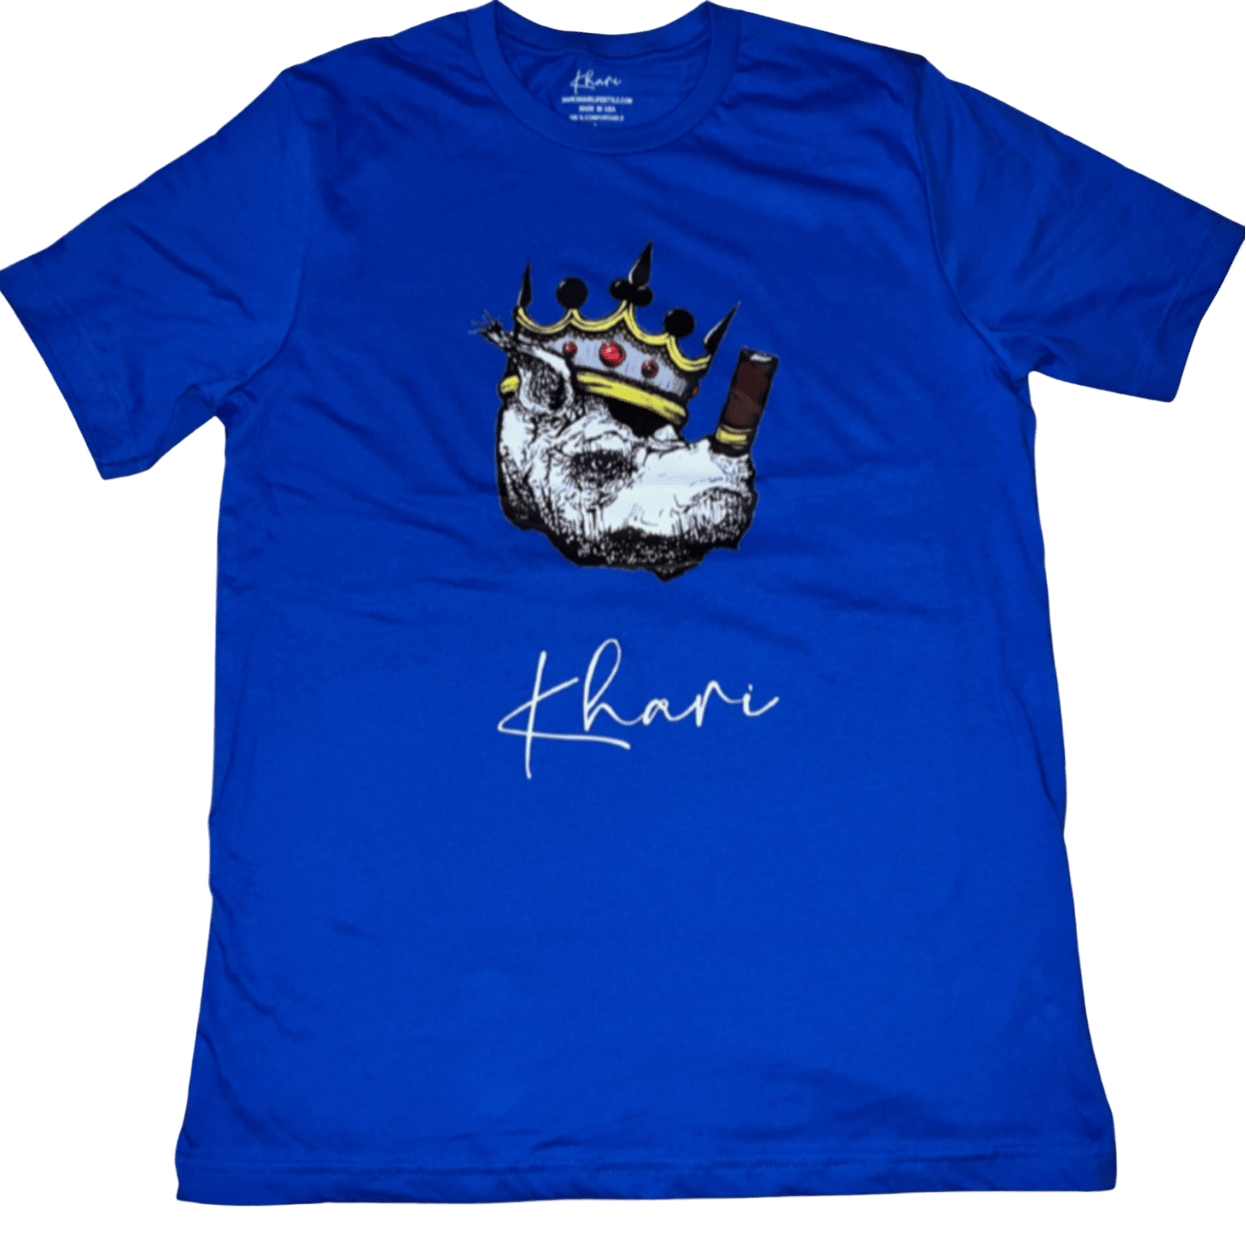 Blue Khari T-shirt